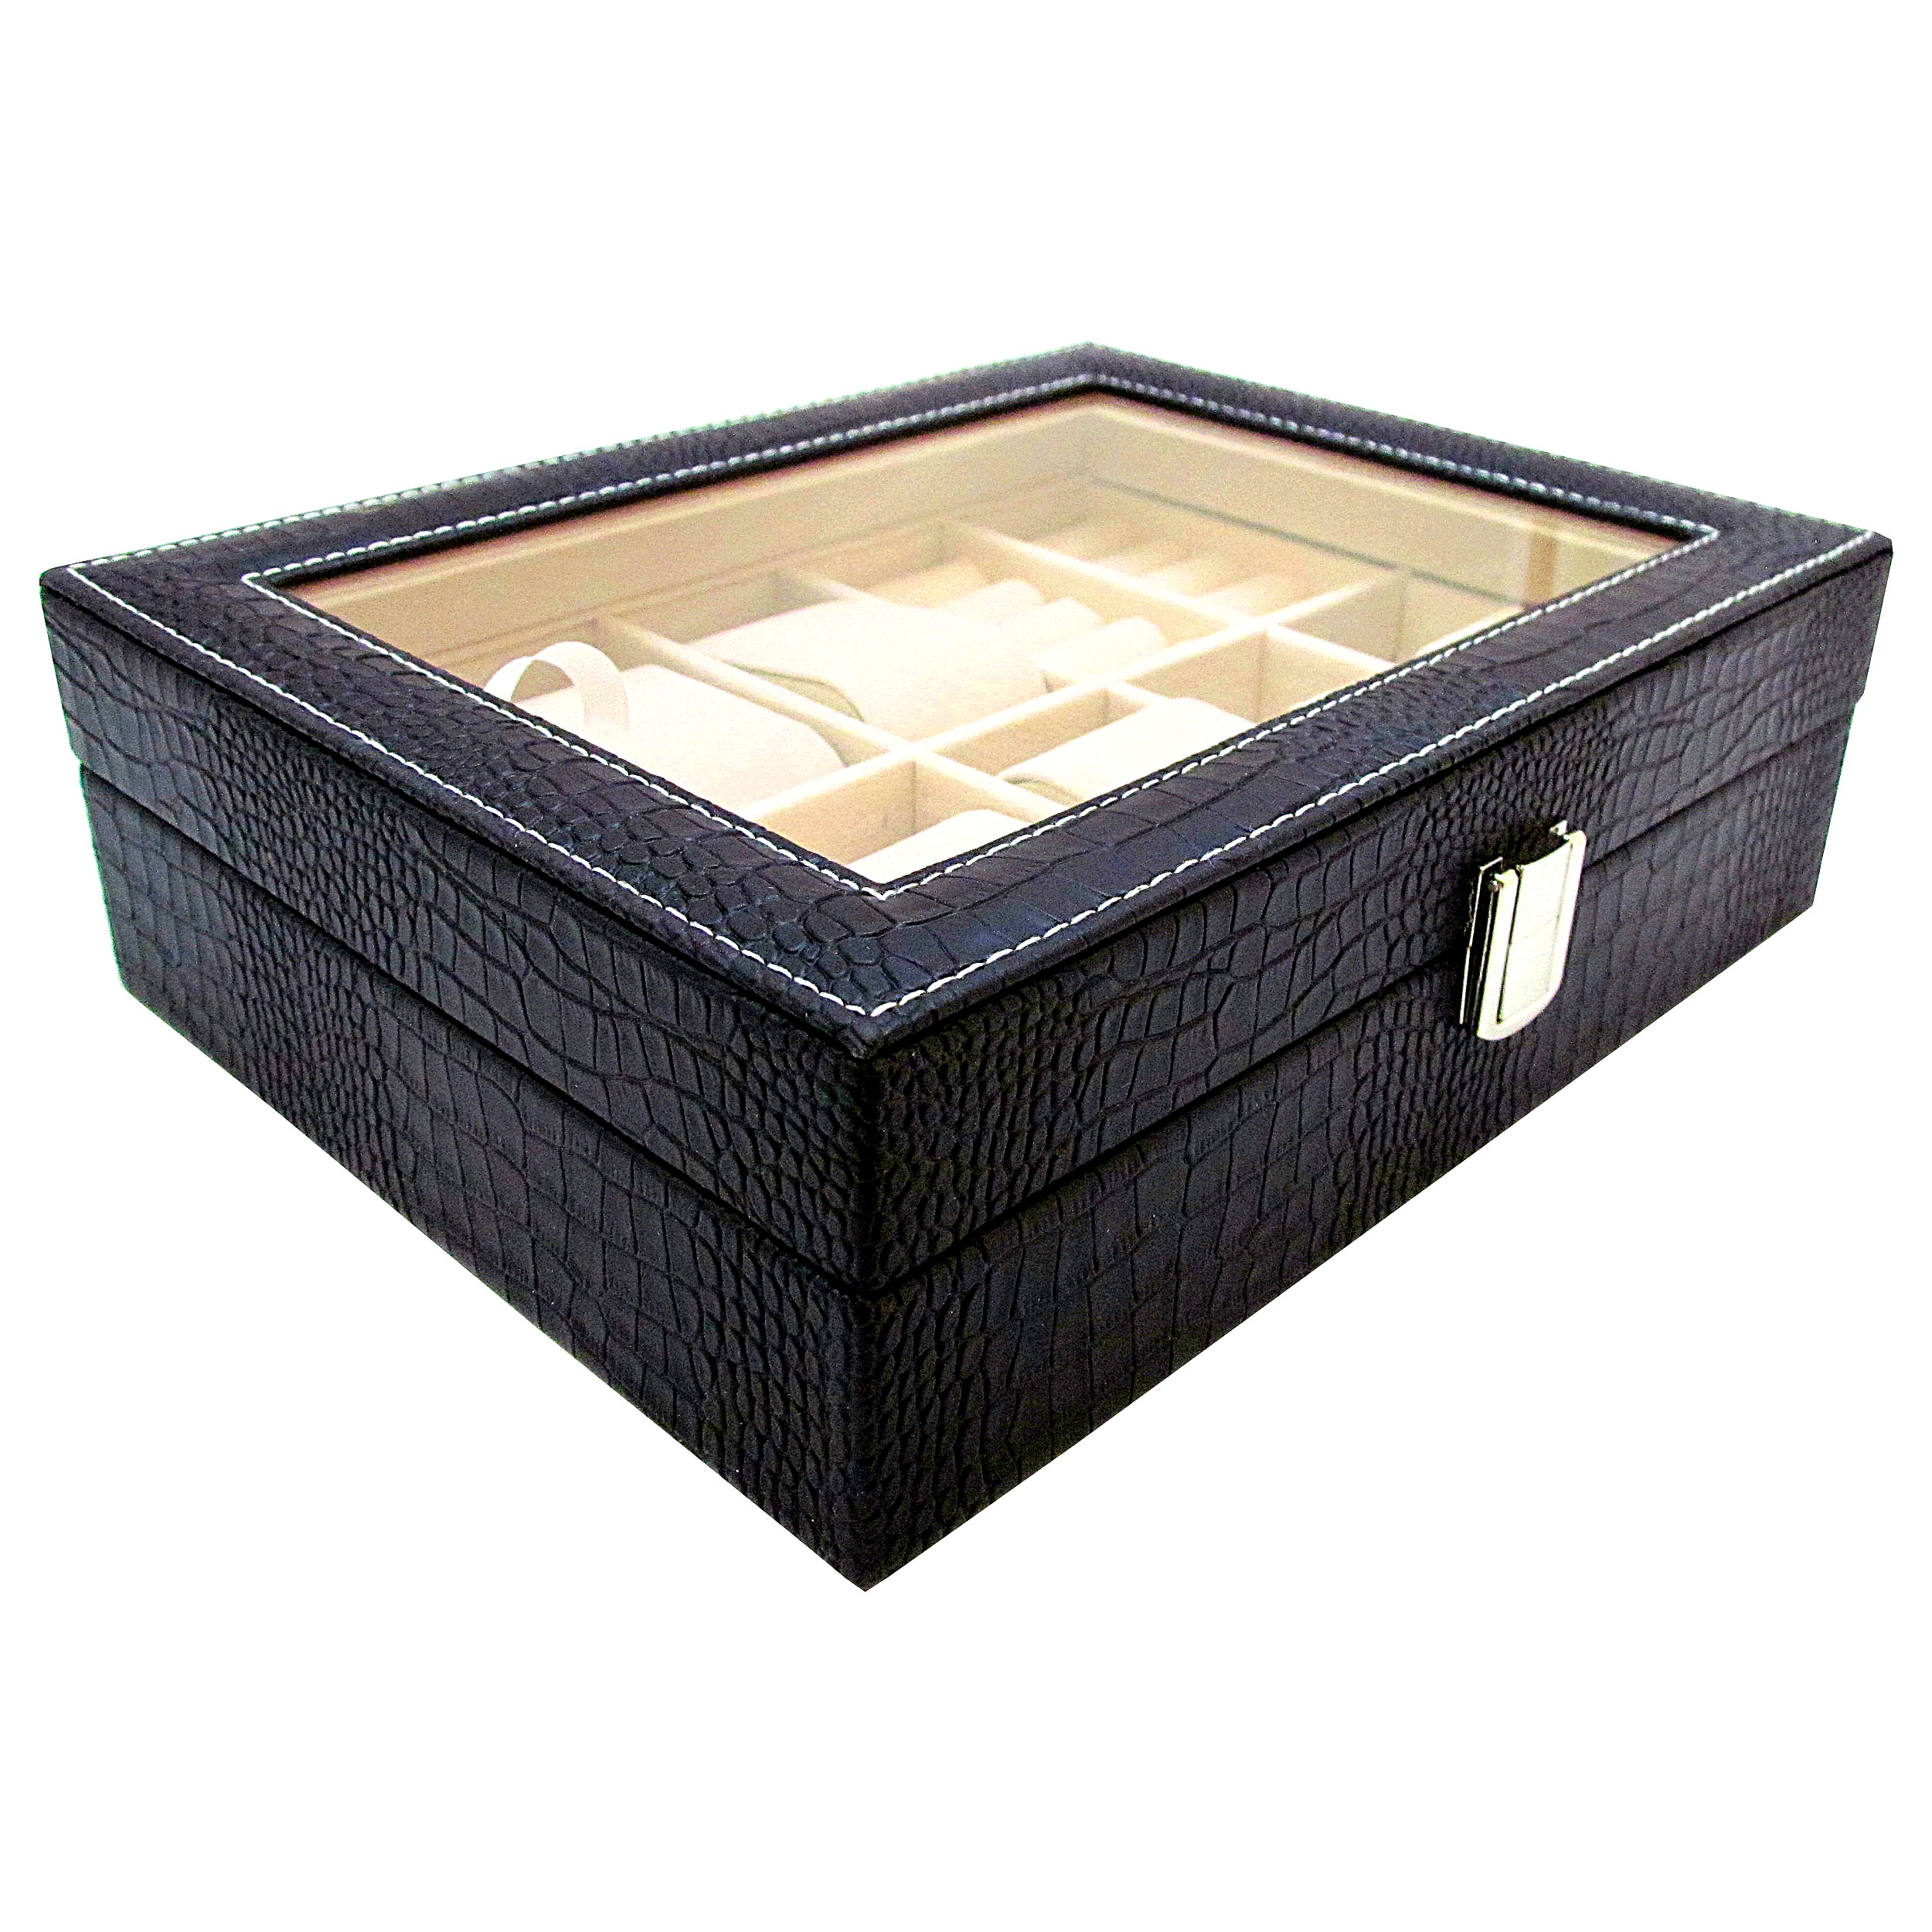 جعبه جواهرات مدل Leather کد 3-500